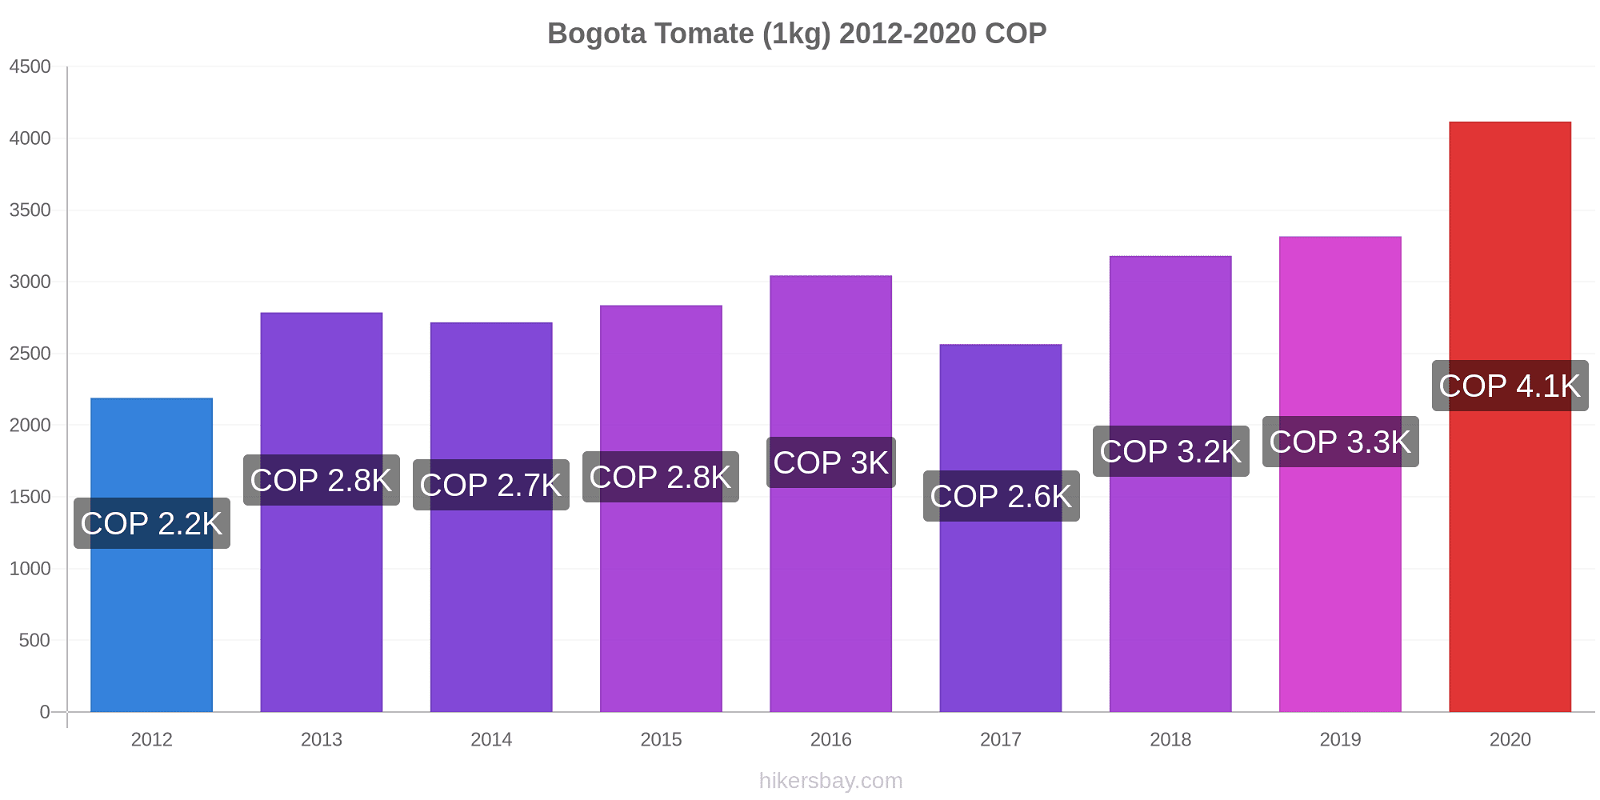 Bogota changements de prix Tomate (1kg) hikersbay.com